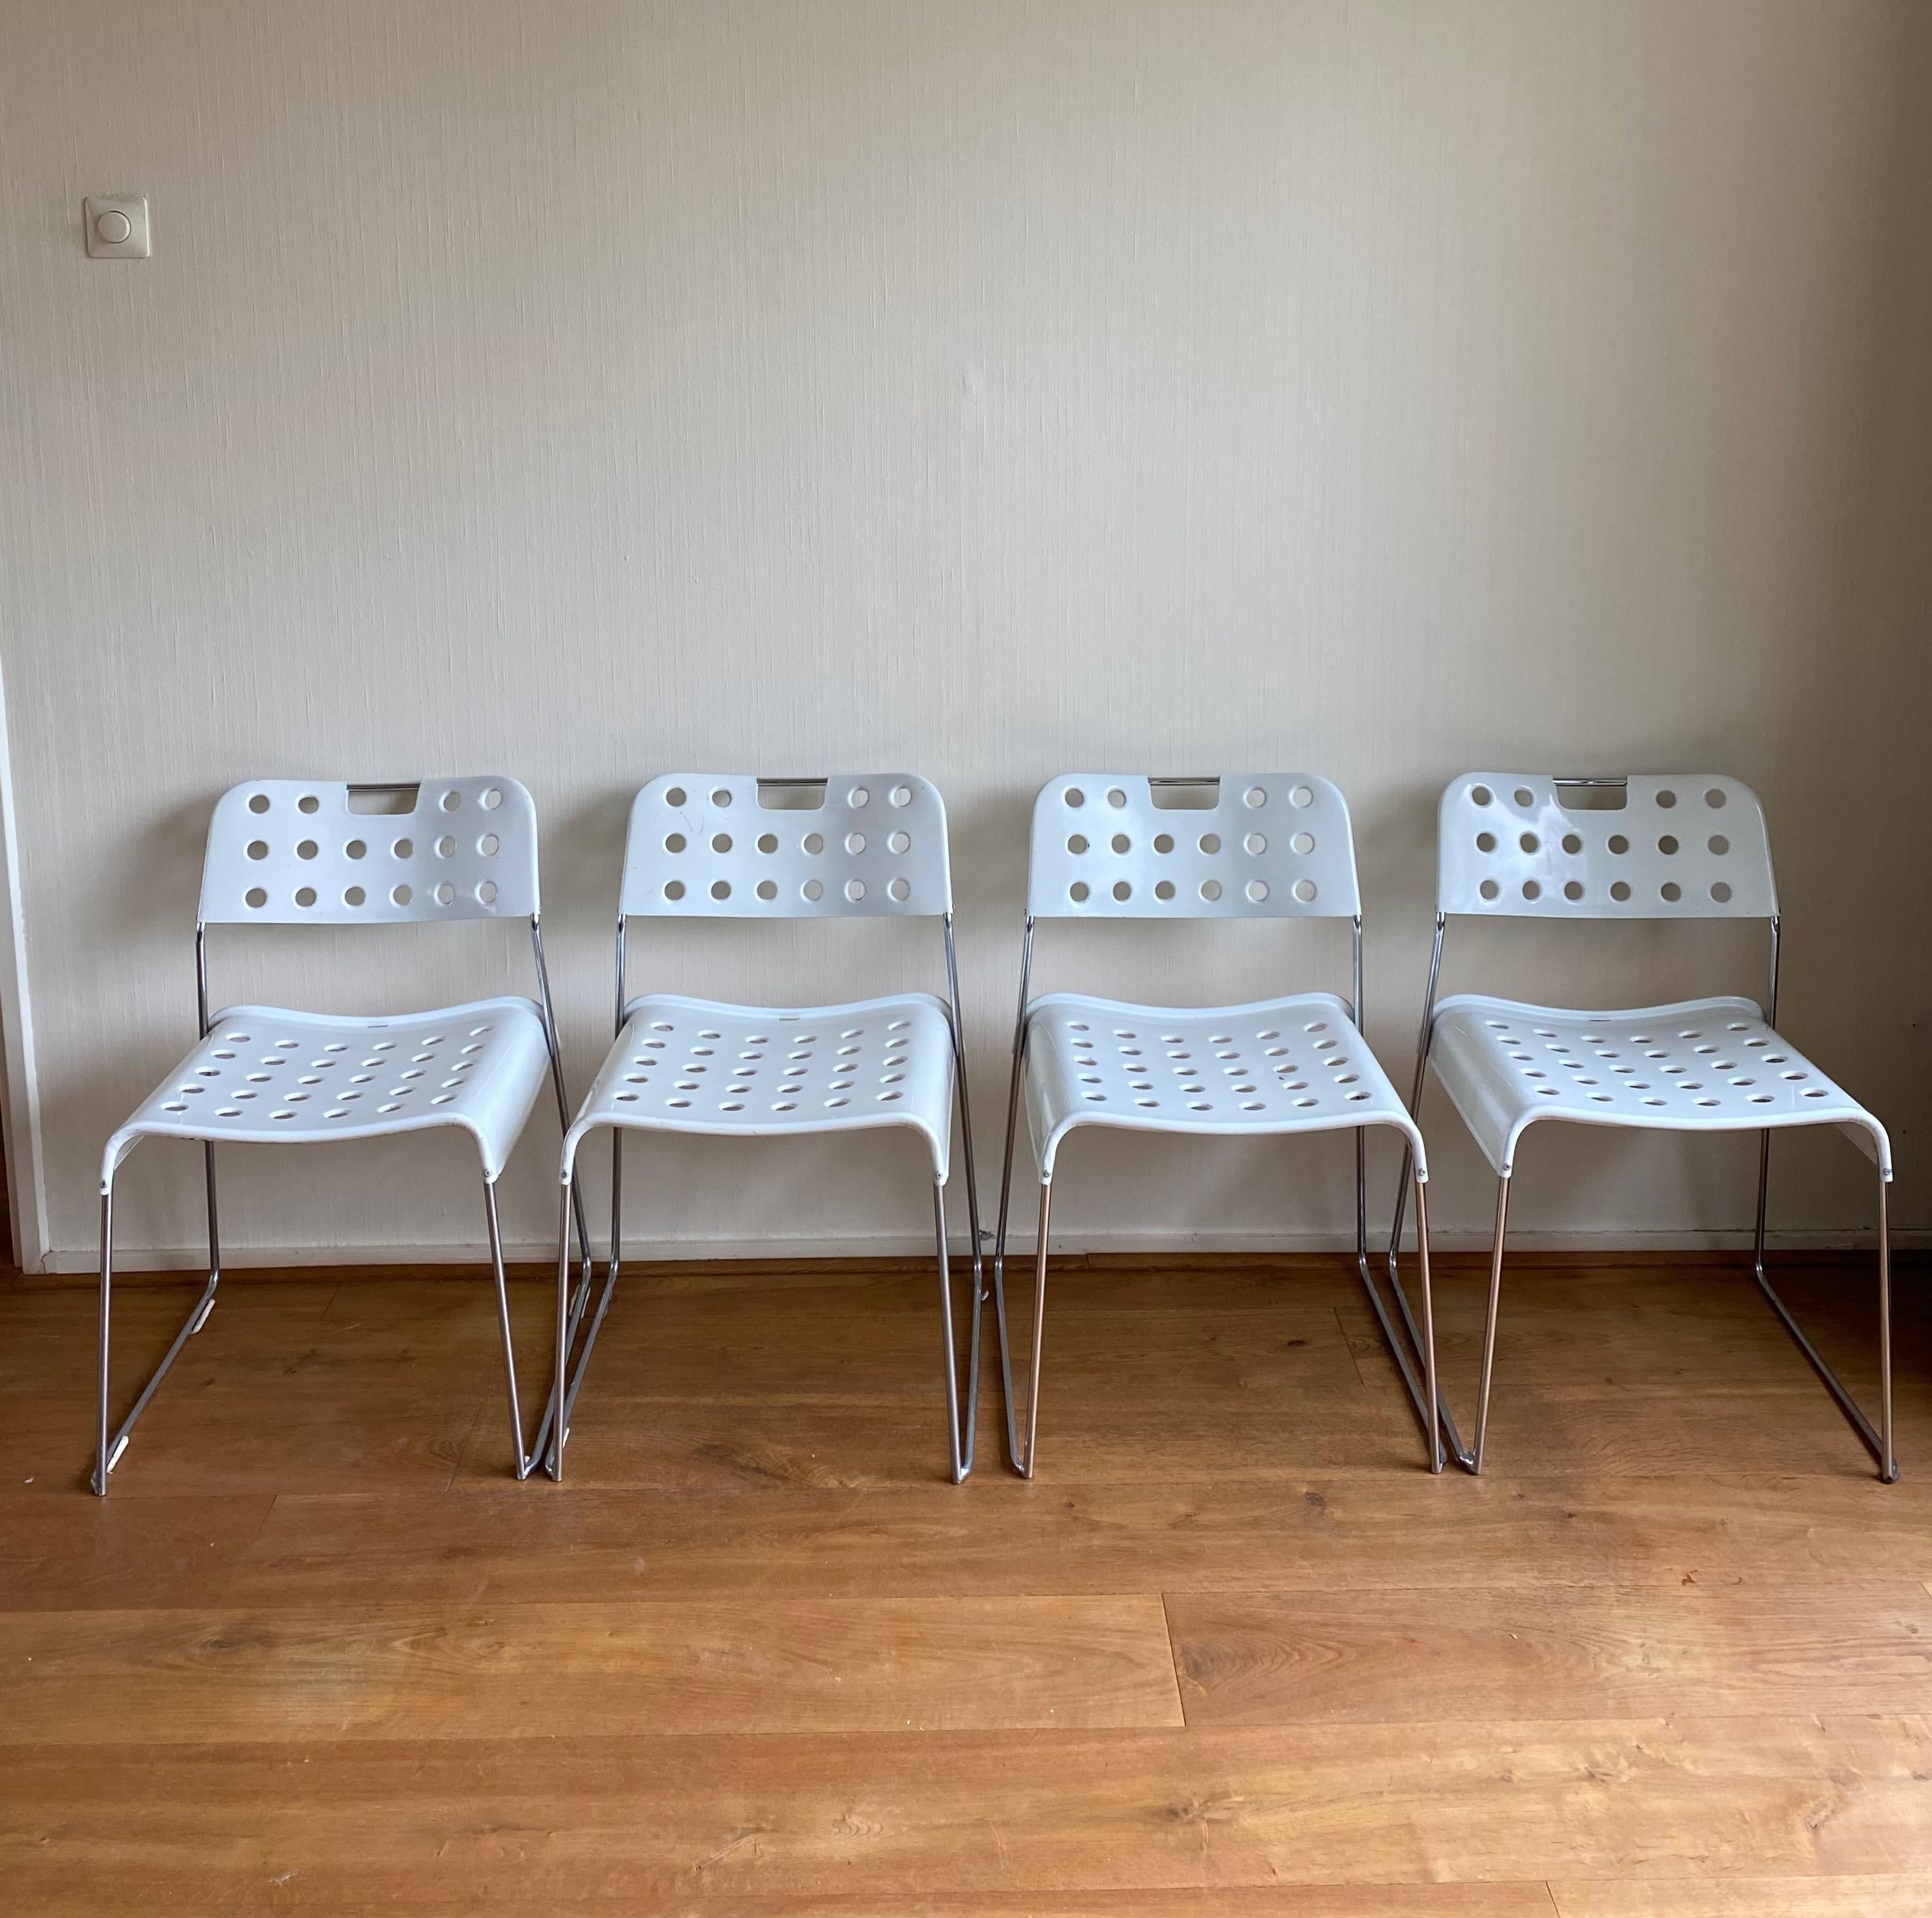 Ensemble de quatre chaises blanches, modèle Omkstak, conçu par Rodney Kinsman pour Bieffeplast Italie. Les chaises sont dotées d'une base en métal perforé et de pieds chromés. Très beau et peu commun Design/One. Les chaises présentent une certaine